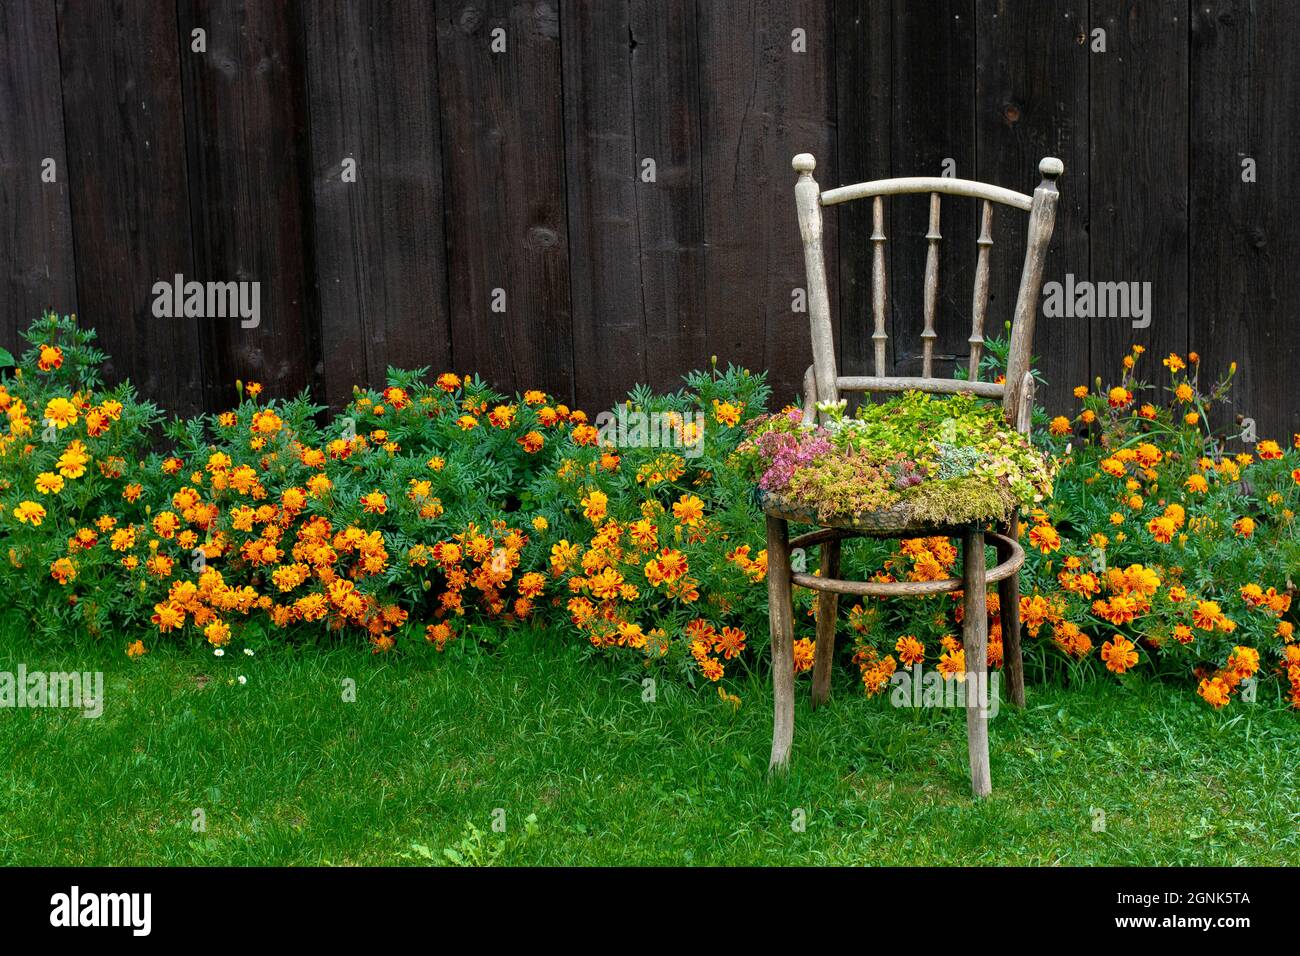 Alte Holzstuhl-Pflanzmaschine. Outdoor Vintage Stuhl recycelt als  Pflanzgefäß verwendet. Stuhl Blumentopf im Garten Stockfotografie - Alamy